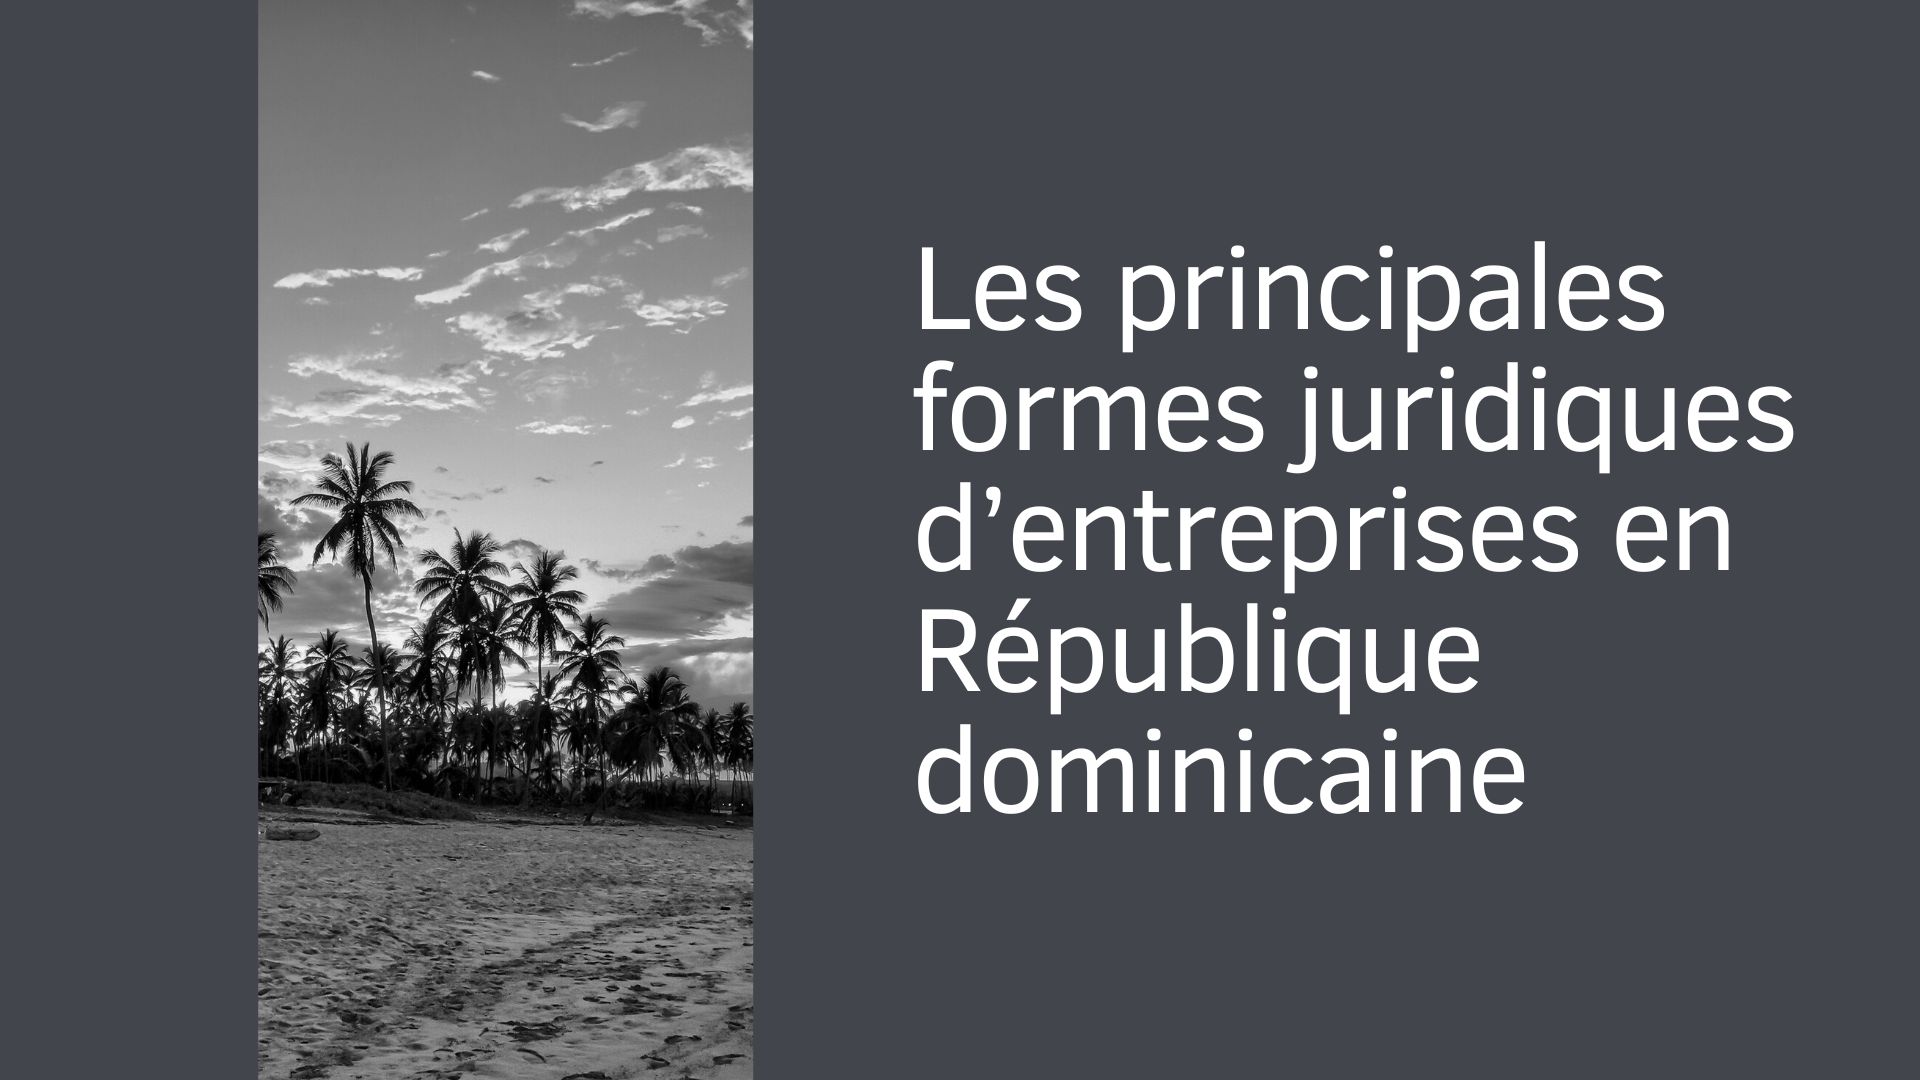 Les principales formes juridiques d'entreprises en République dominicaine